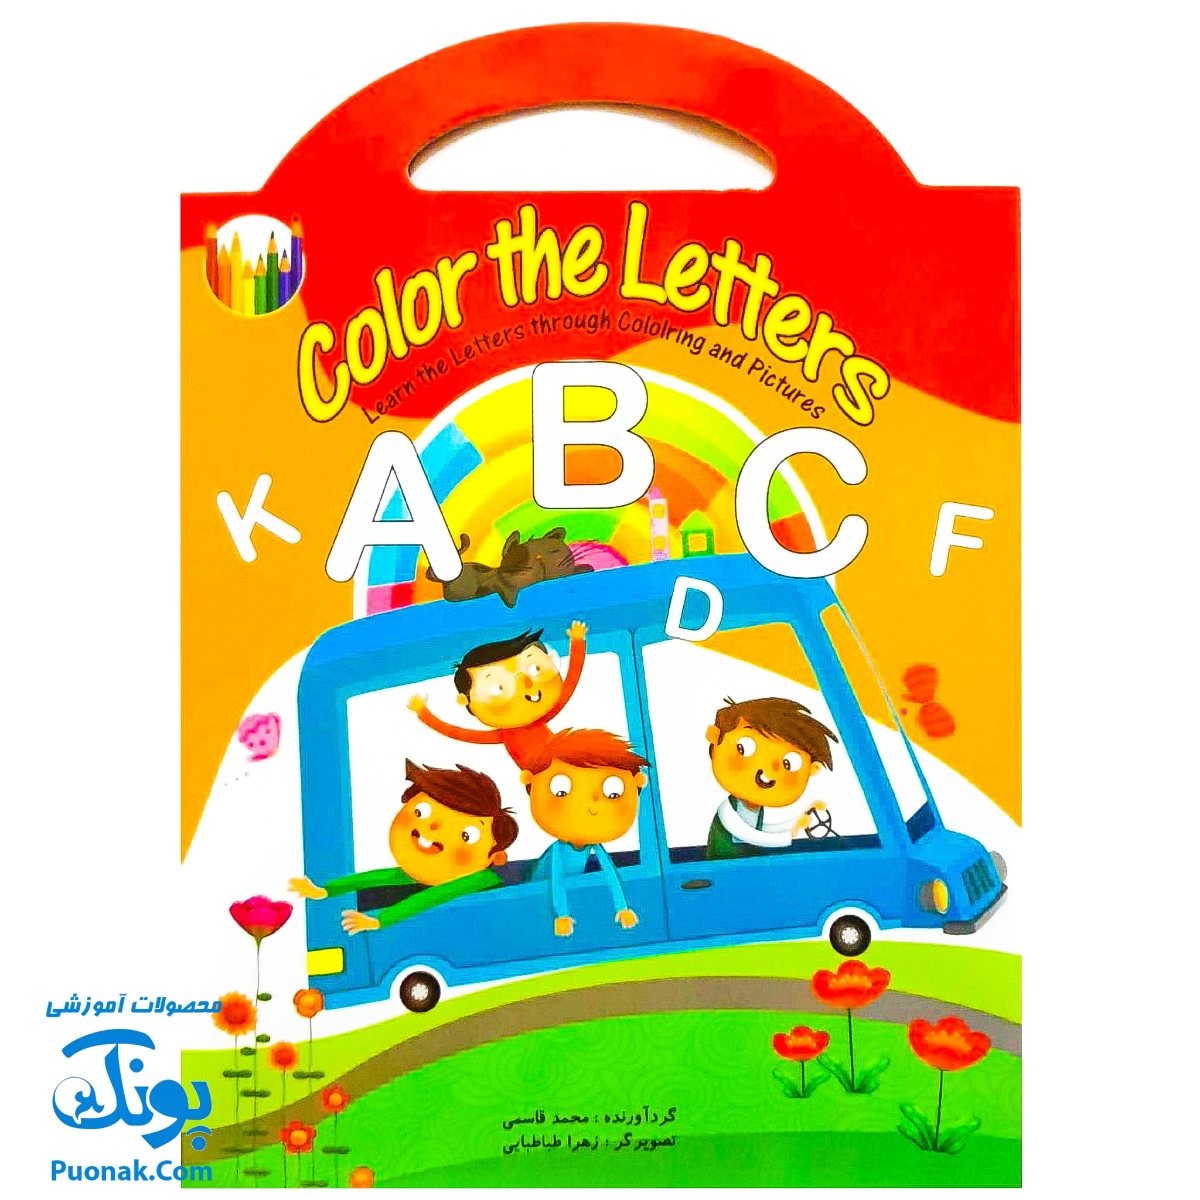 کتاب آموزش color the letters دسته دار (آموزش حروف الفبای انگلیسی با کمک رنگ آمیزی)